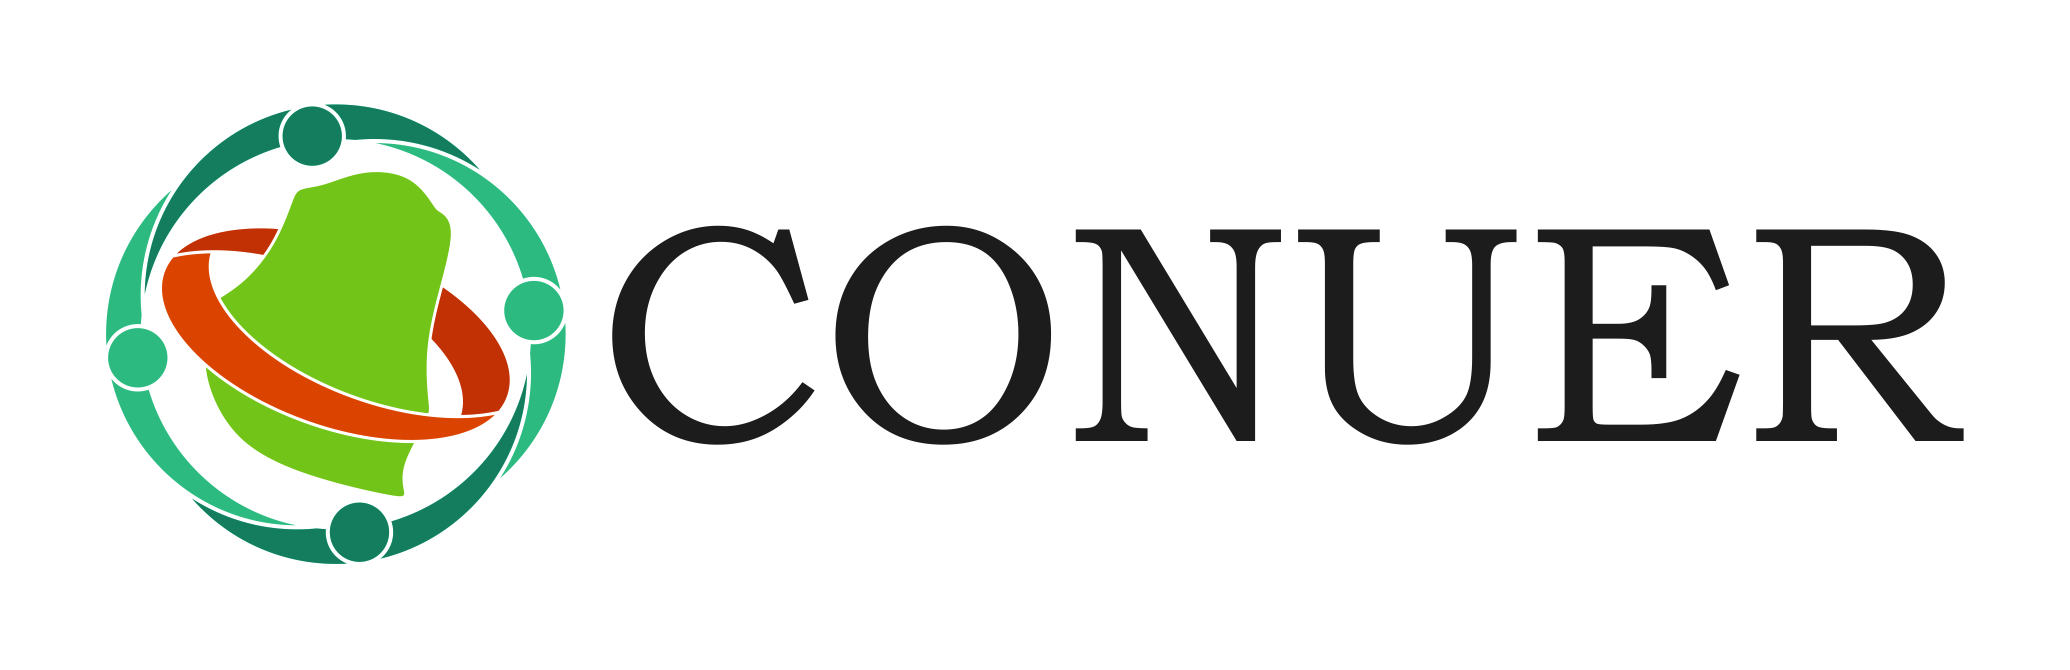 CONUER logo (1)